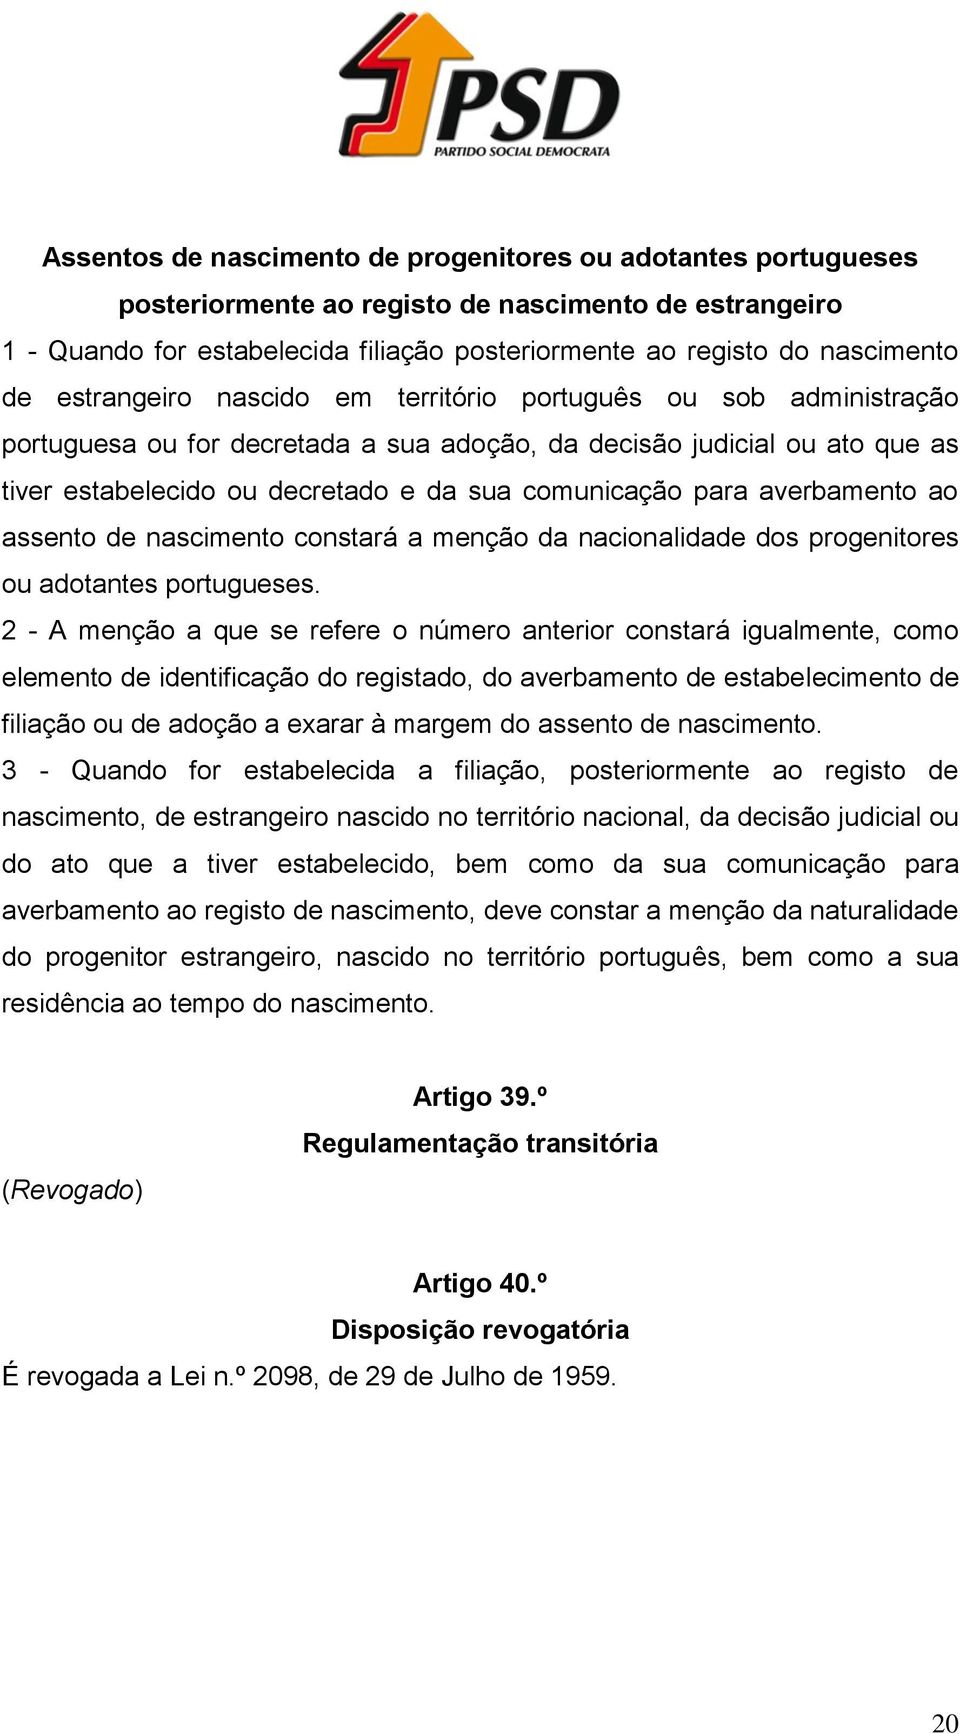 averbamento ao assento de nascimento constará a menção da nacionalidade dos progenitores ou adotantes portugueses.